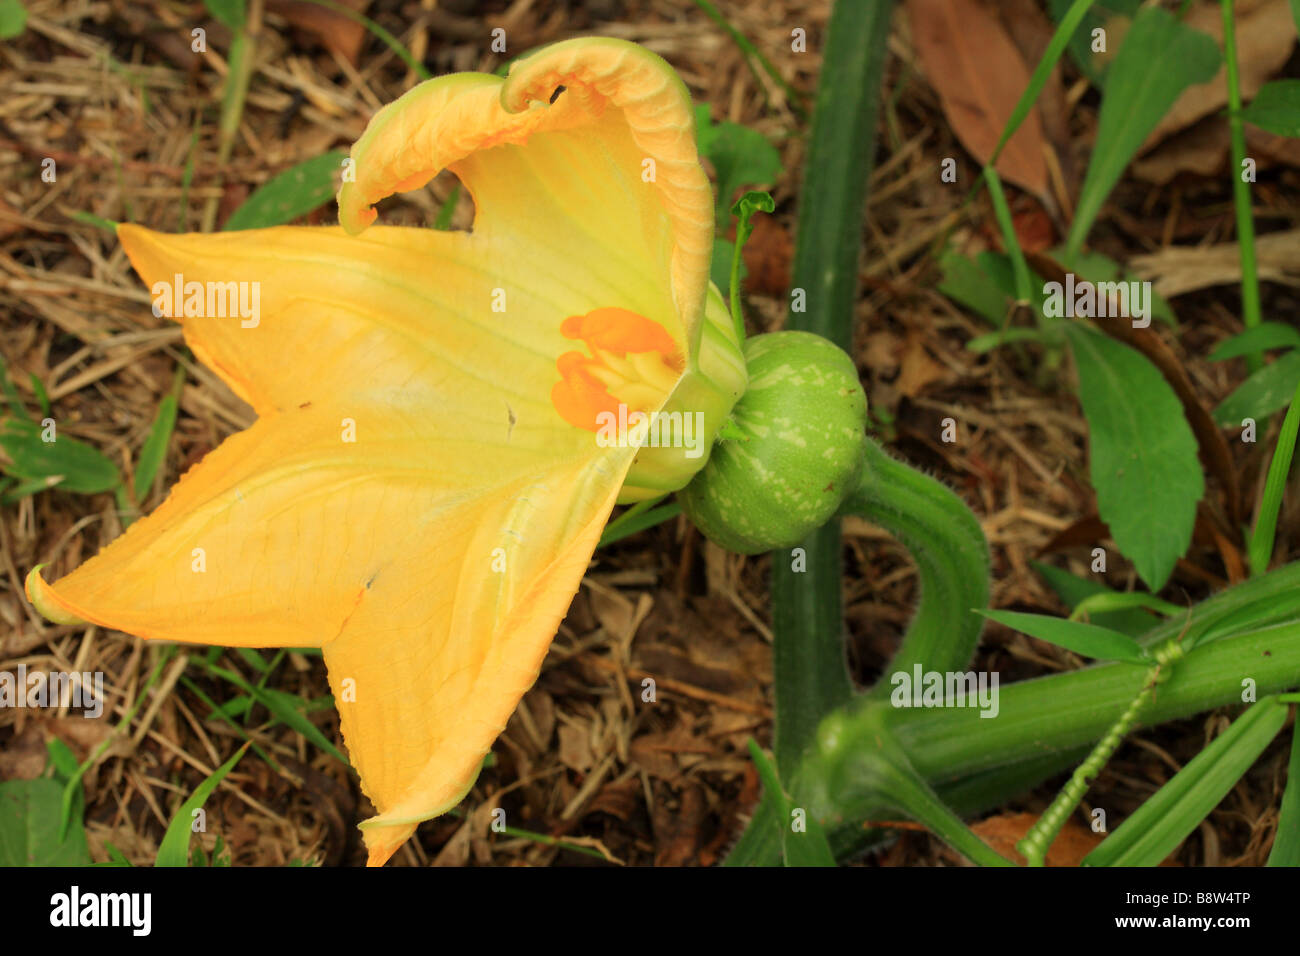 'Kent' or 'Jap' Pumpkin Flower a newly forming pumpkin. Stock Photo